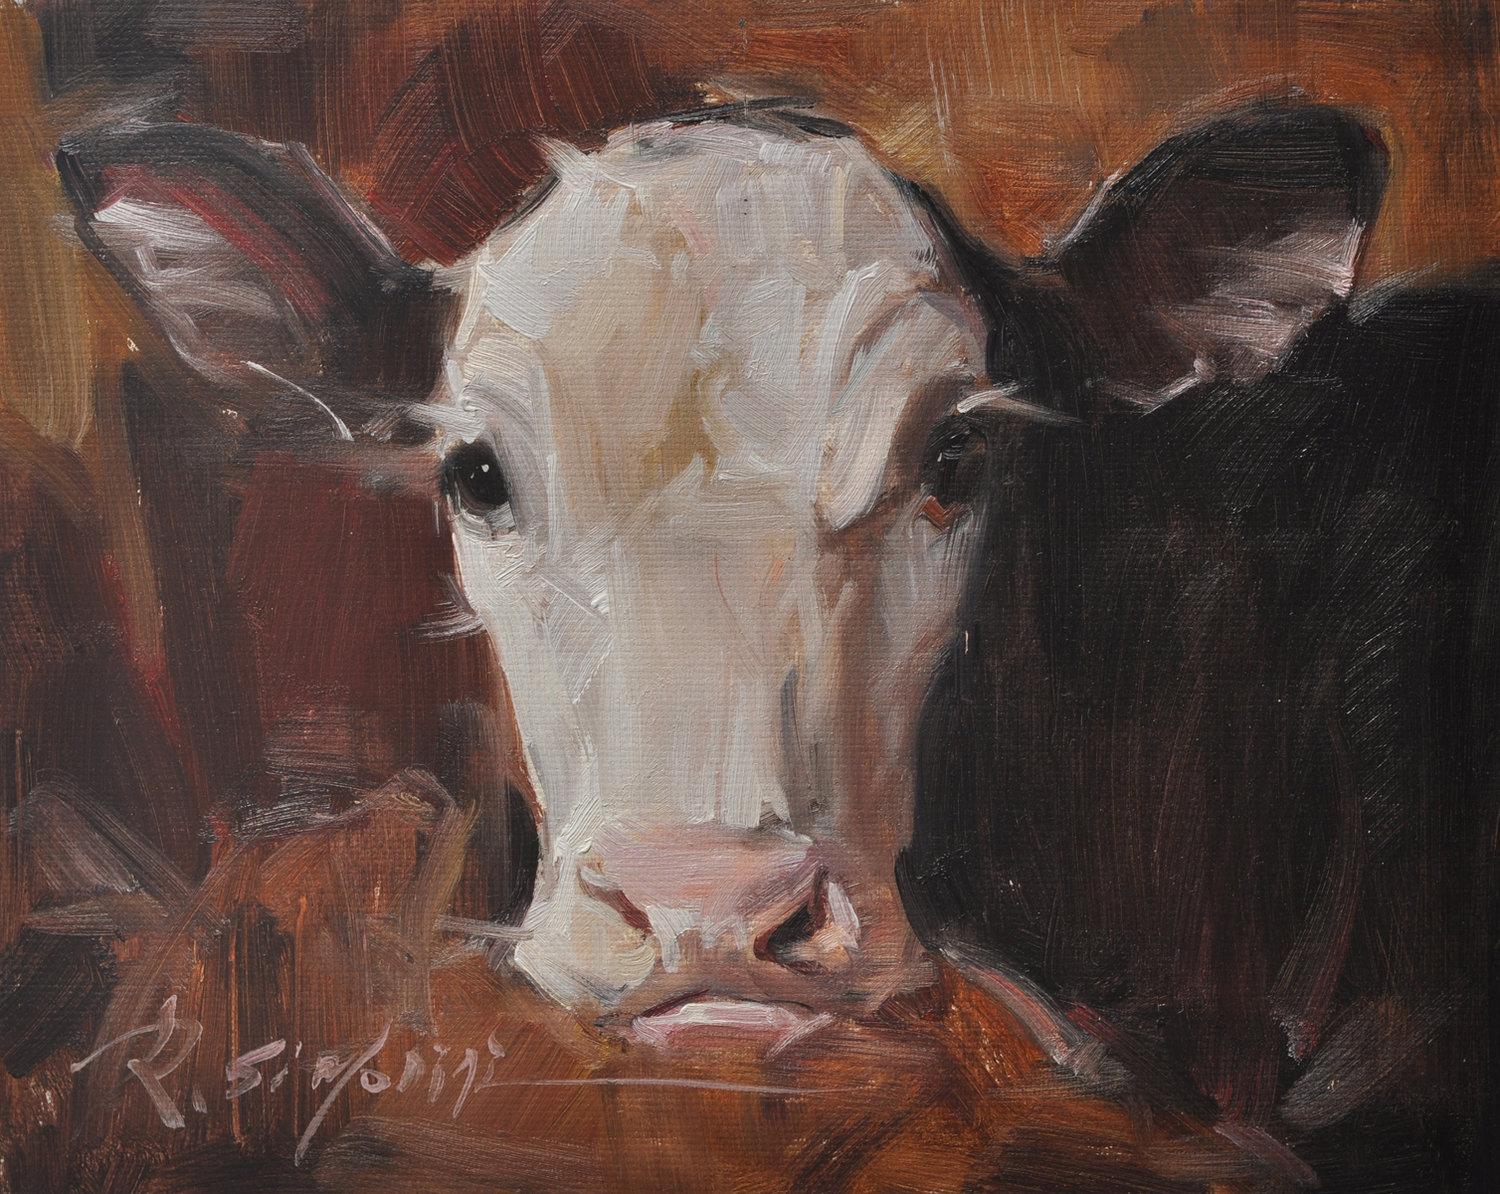 Cette peinture de l'artiste Ray SIMONINI intitulée "Sue Ellen" est une peinture à l'huile sur toile 8x10 représentant une vache marron foncé avec un nez rose sur un fond dramatique de couleur terre d'ombre brûlée. 

A propos de l'artiste :
SIMONINI